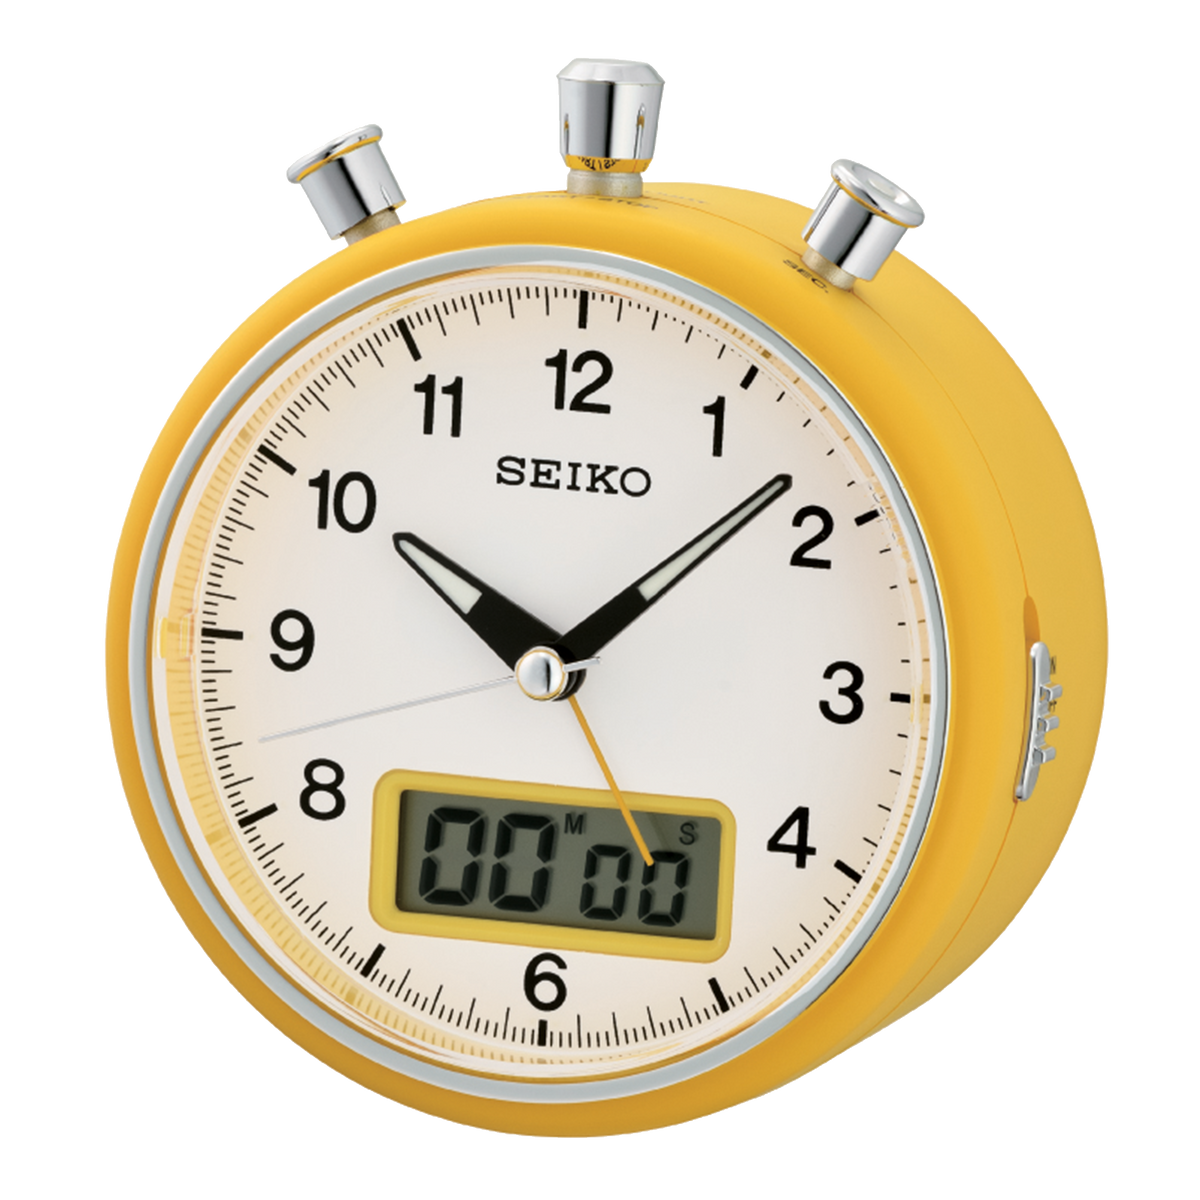 Seiko - Stopwatch style Alarm Clock